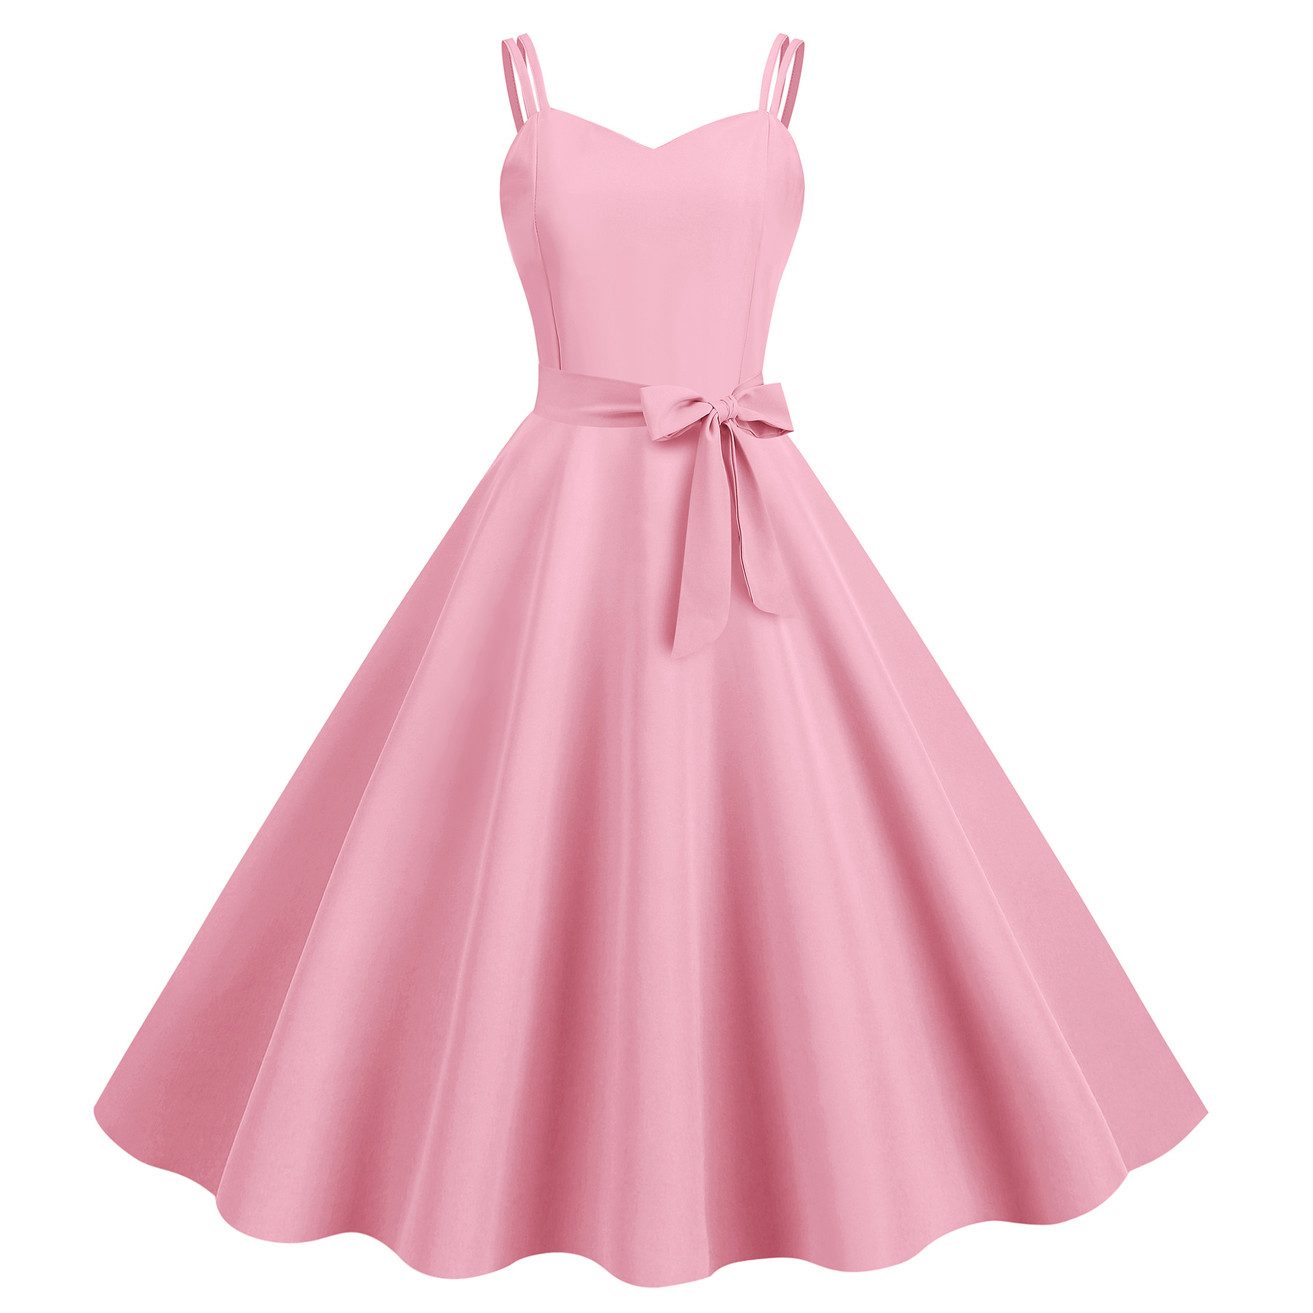 ZWY Spaghettikleid Strapskleid rockabilly kleider damen rosa,Off-Shoulder-Kleid, (Anlass: Hochzeit, Festival, Party, Geschenk) kleider damen festlich,kleider für hochzeitsgäste,A-Linien-Kleid